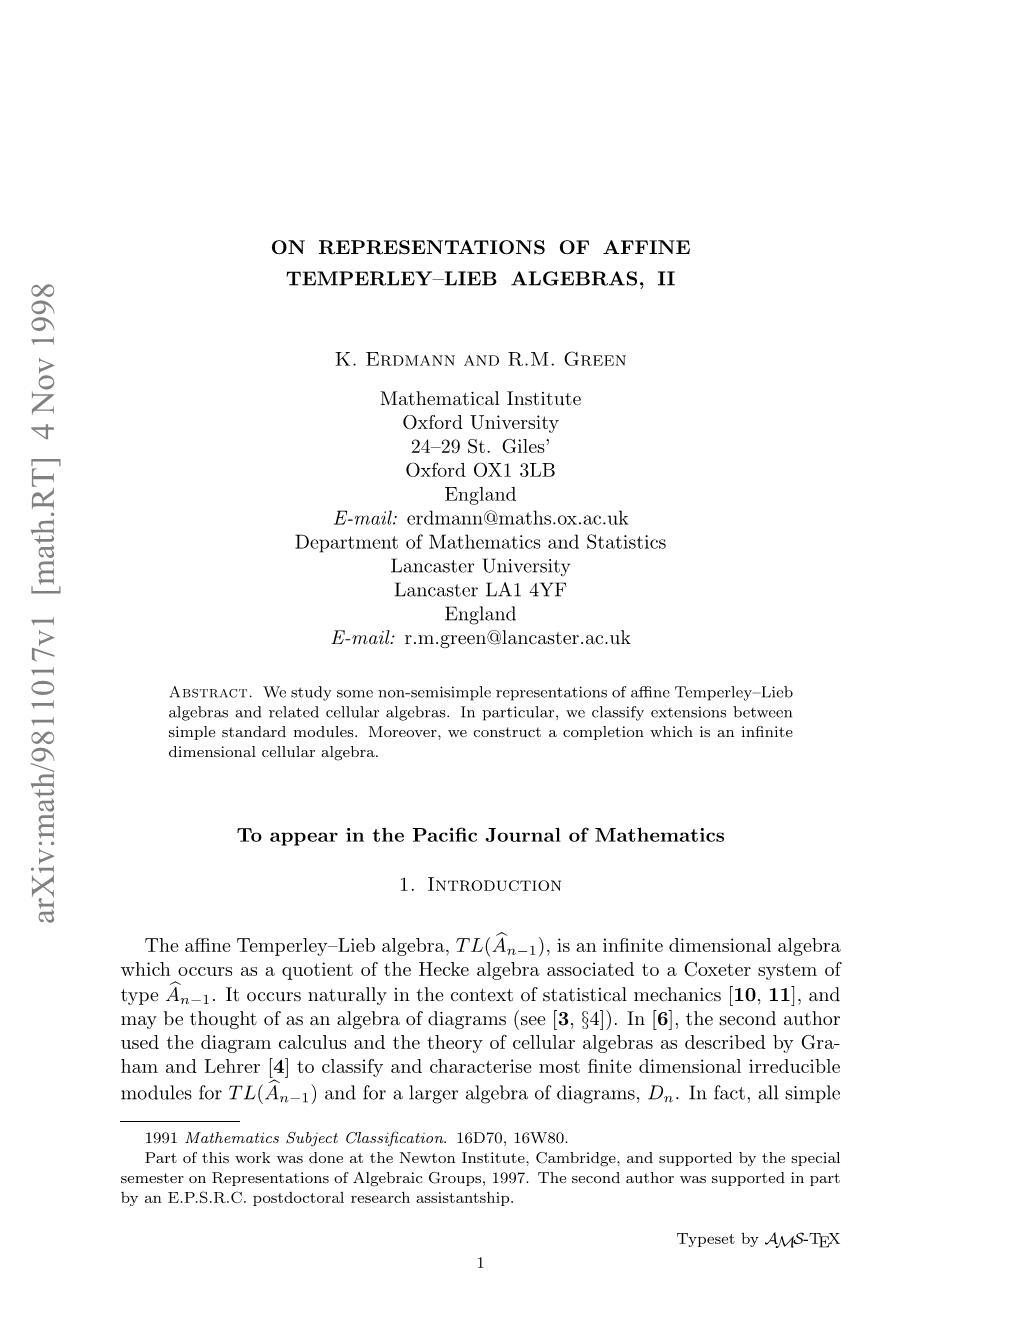 Arxiv:Math/9811017V1 [Math.RT] 4 Nov 1998